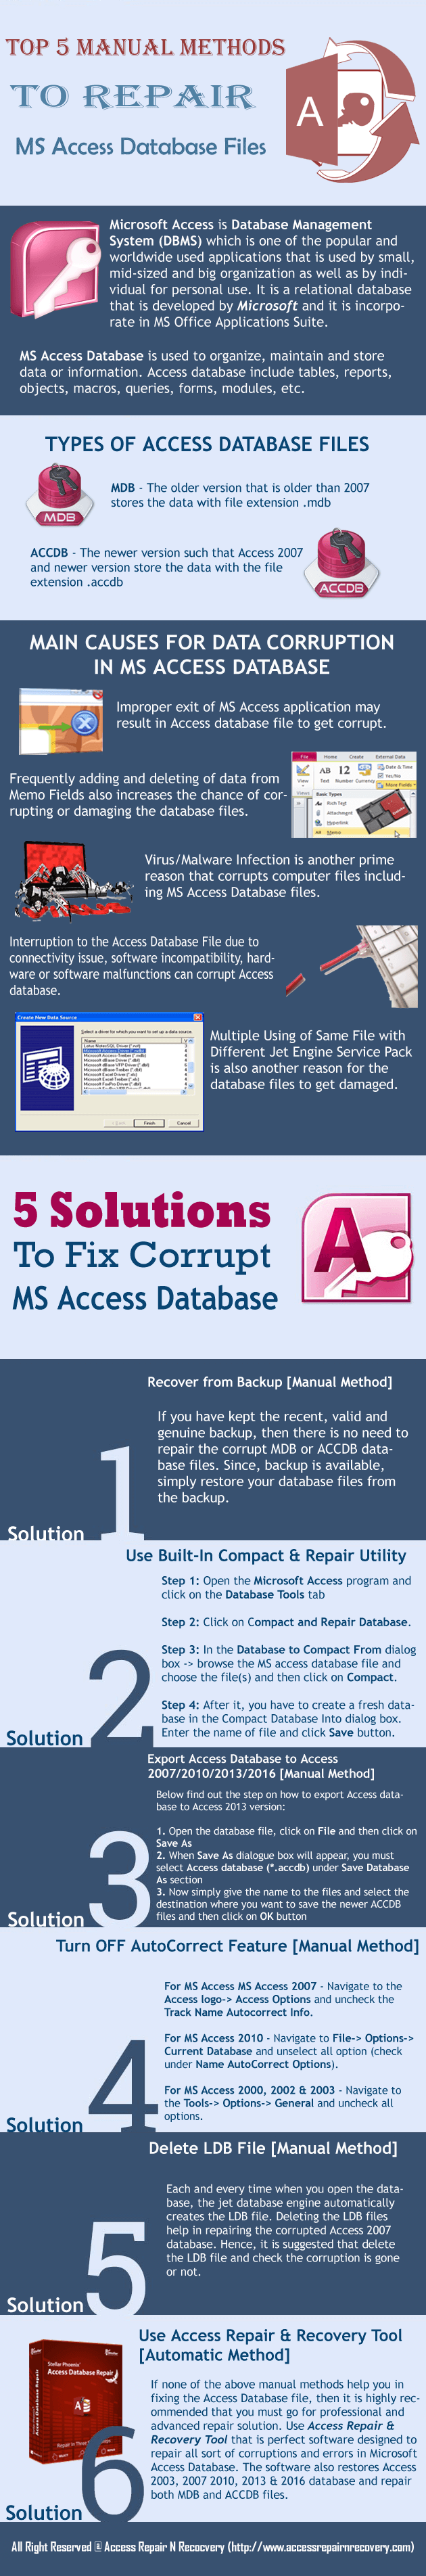 Manual Methods To Repair MS Access Database Files